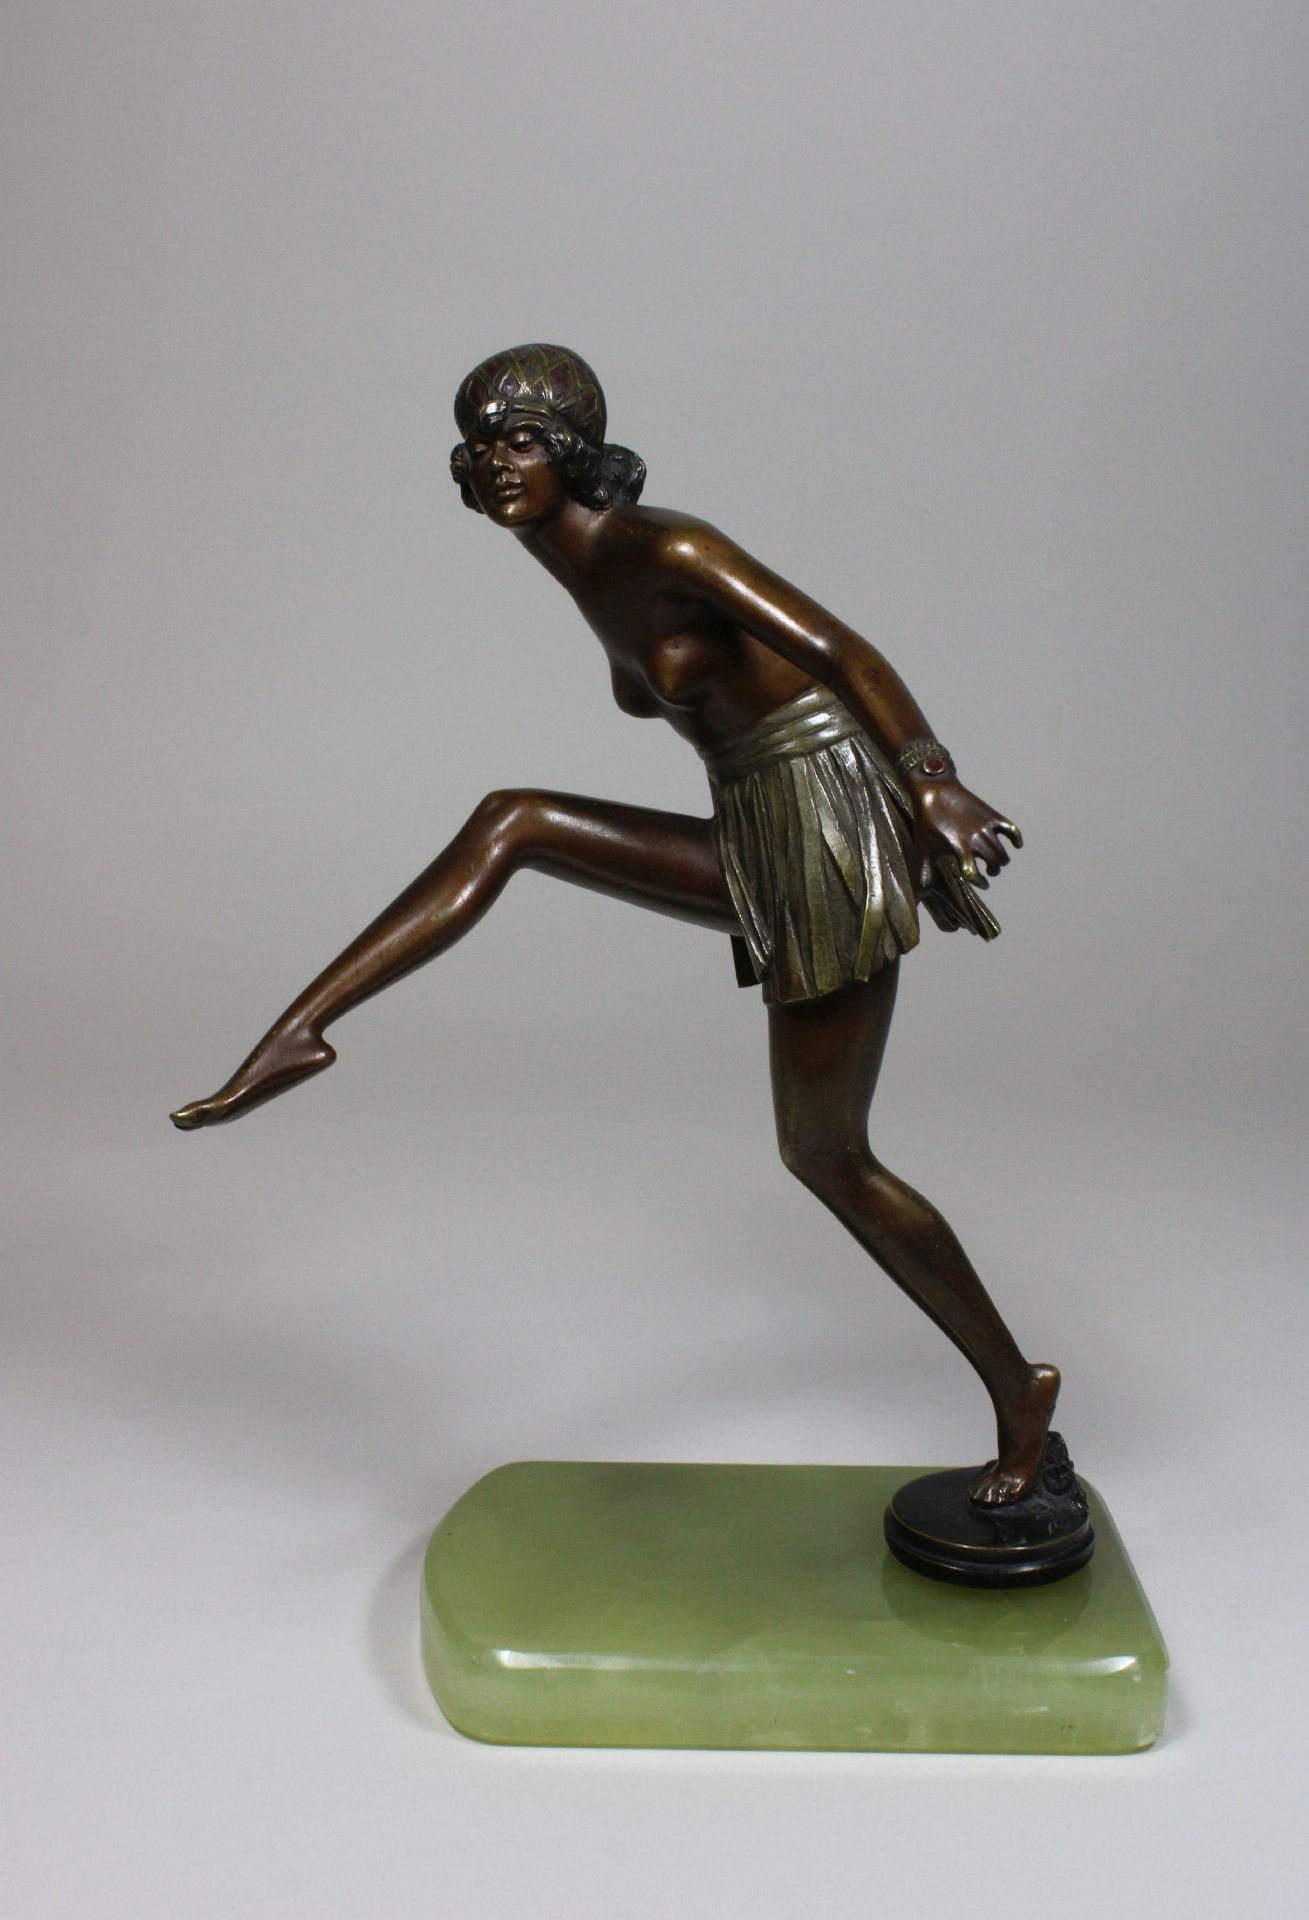 Bruno Zach (österreichisch, 1891 - 1945) zugeschrieben, Tänzerin, Art Deco, Bronze, unsigniert, - Image 2 of 2